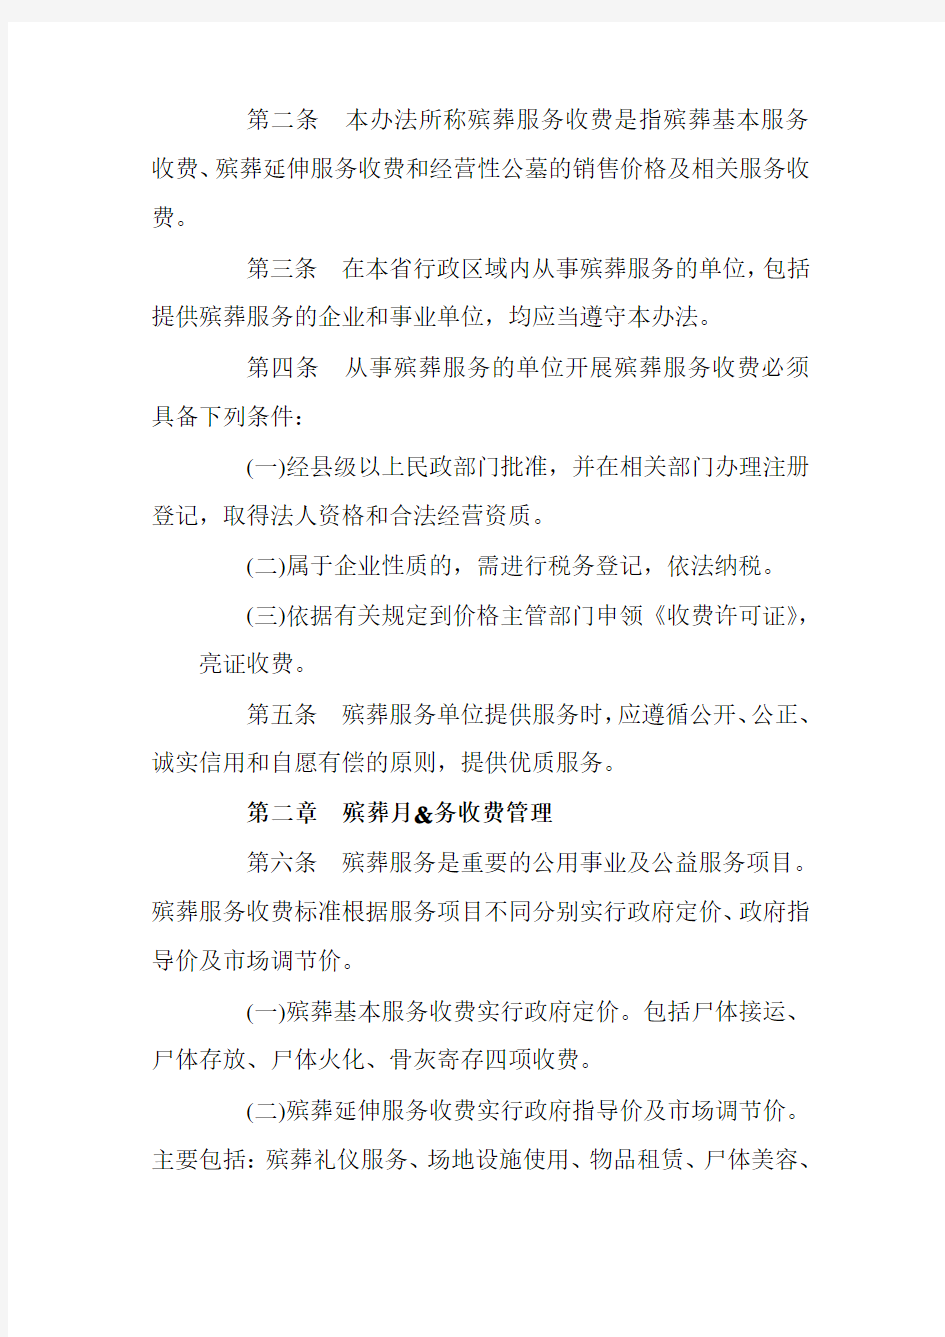 黑龙江省殡葬服务收费管理办法